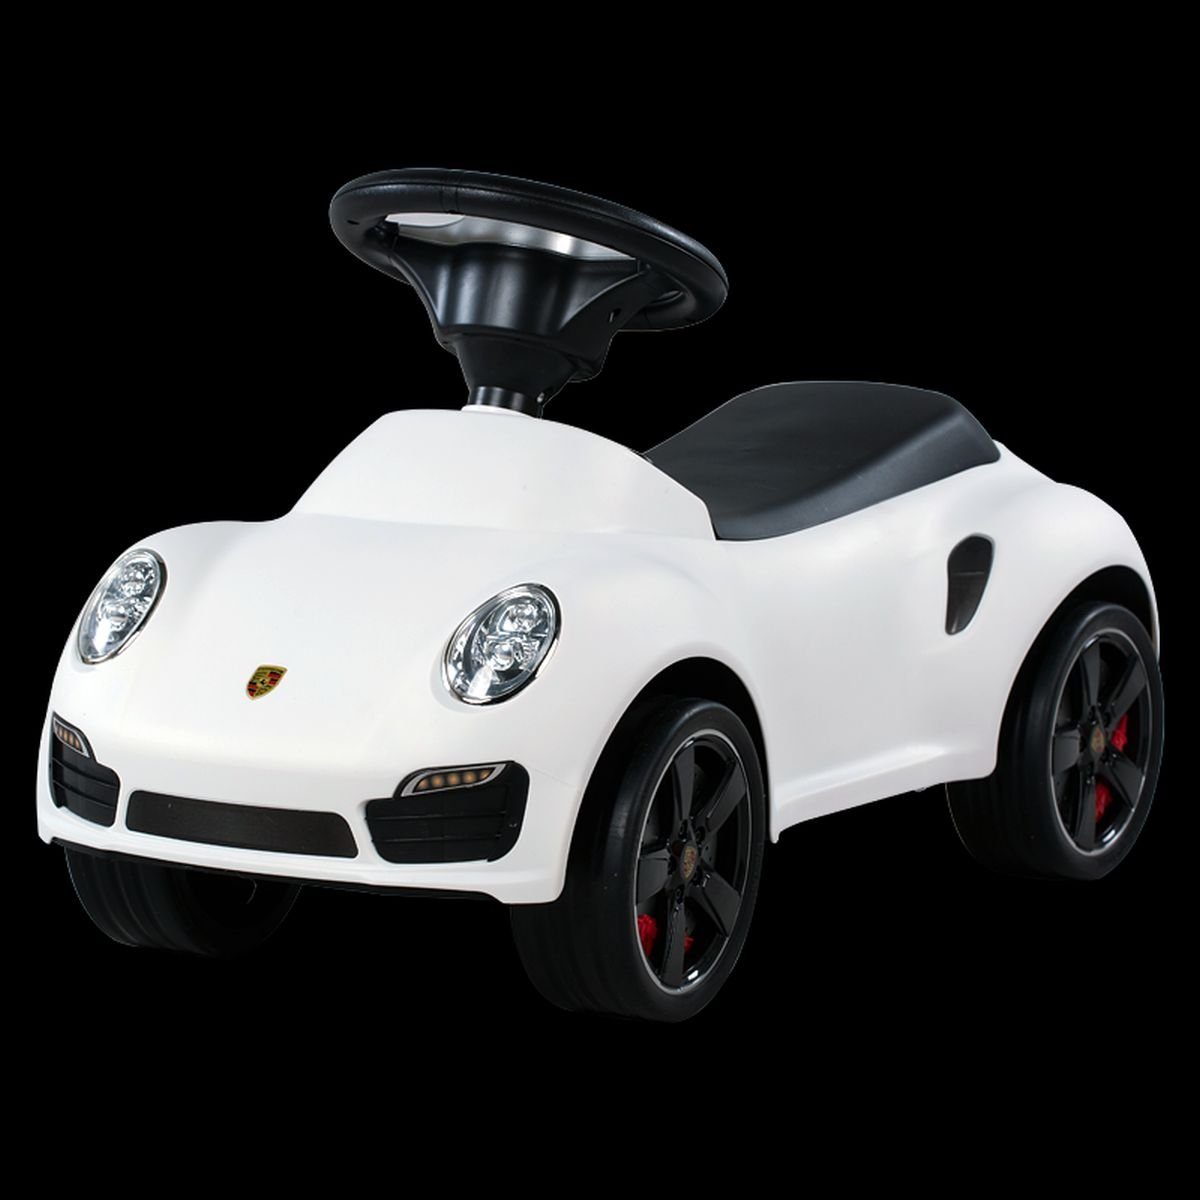 Toys Store Rutscherauto »Kinder Porsche 911 Turbo S Rutschauto Rutscher Car  Babyauto« online kaufen | OTTO